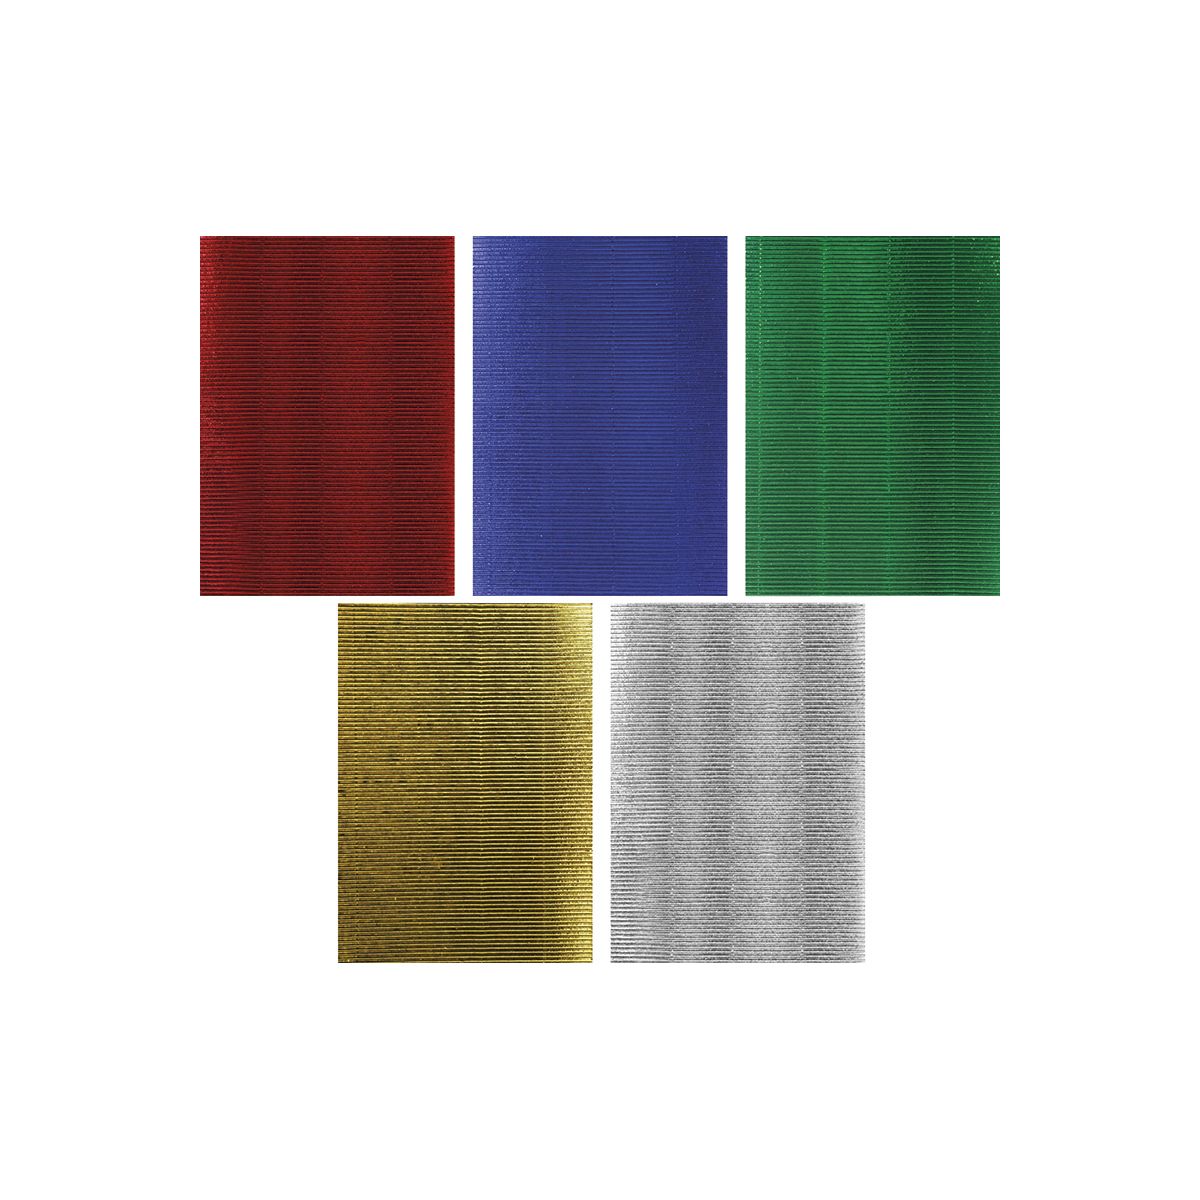 Karton falisty Craft-Fun Series A4 5 kolorów metalizowanych mix Titanum